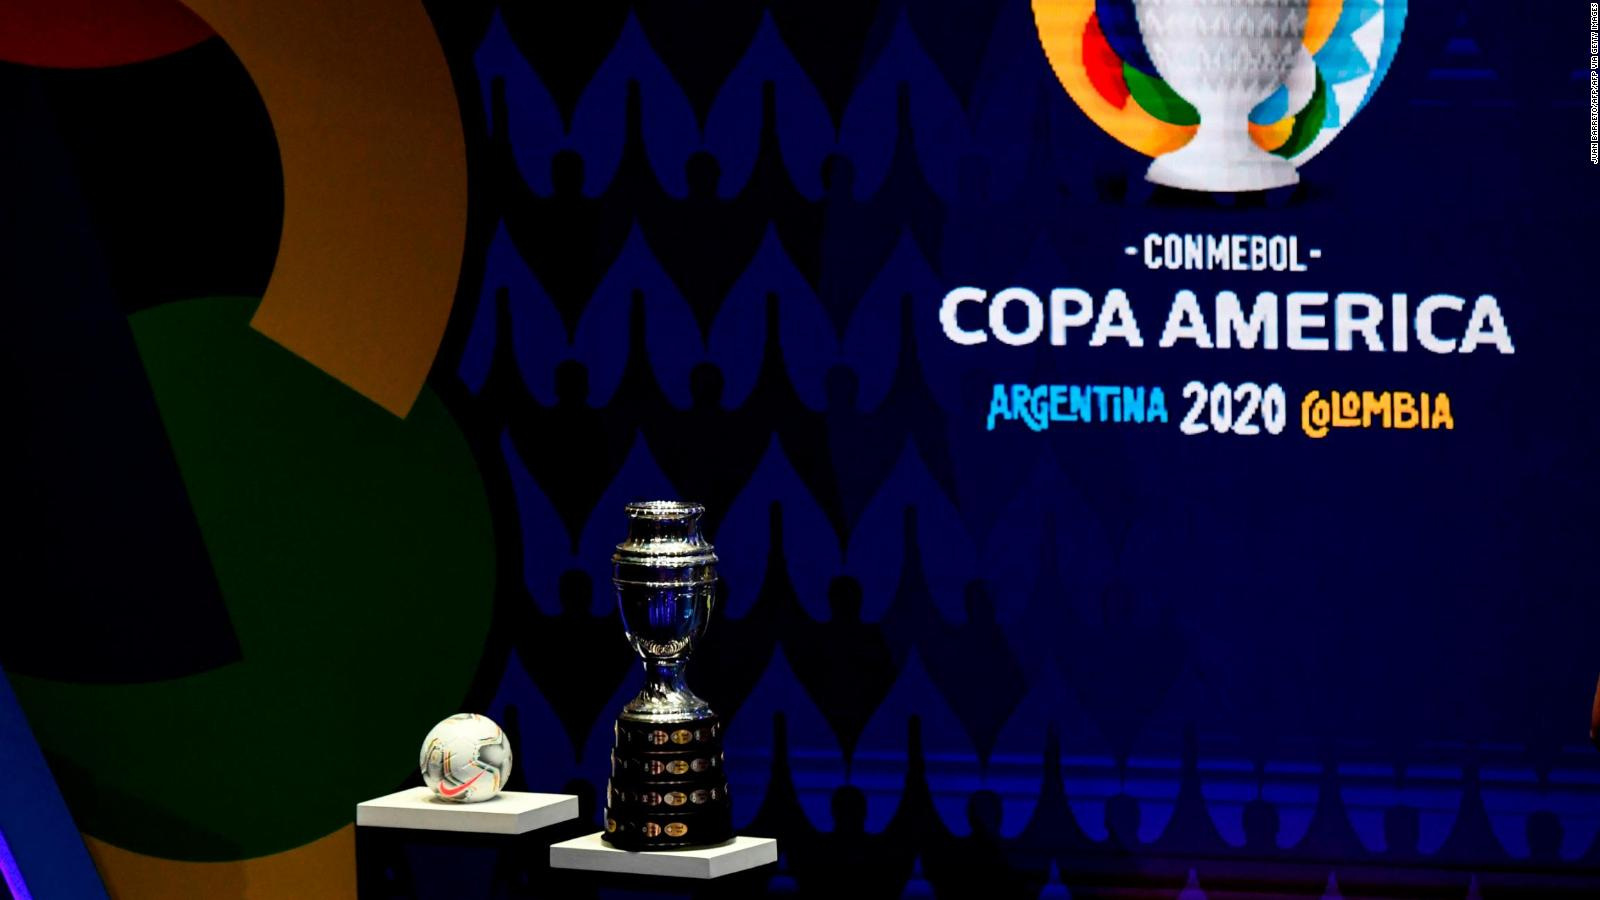 ¡ATENCIÓN! Peligra la Copa América en Argentina